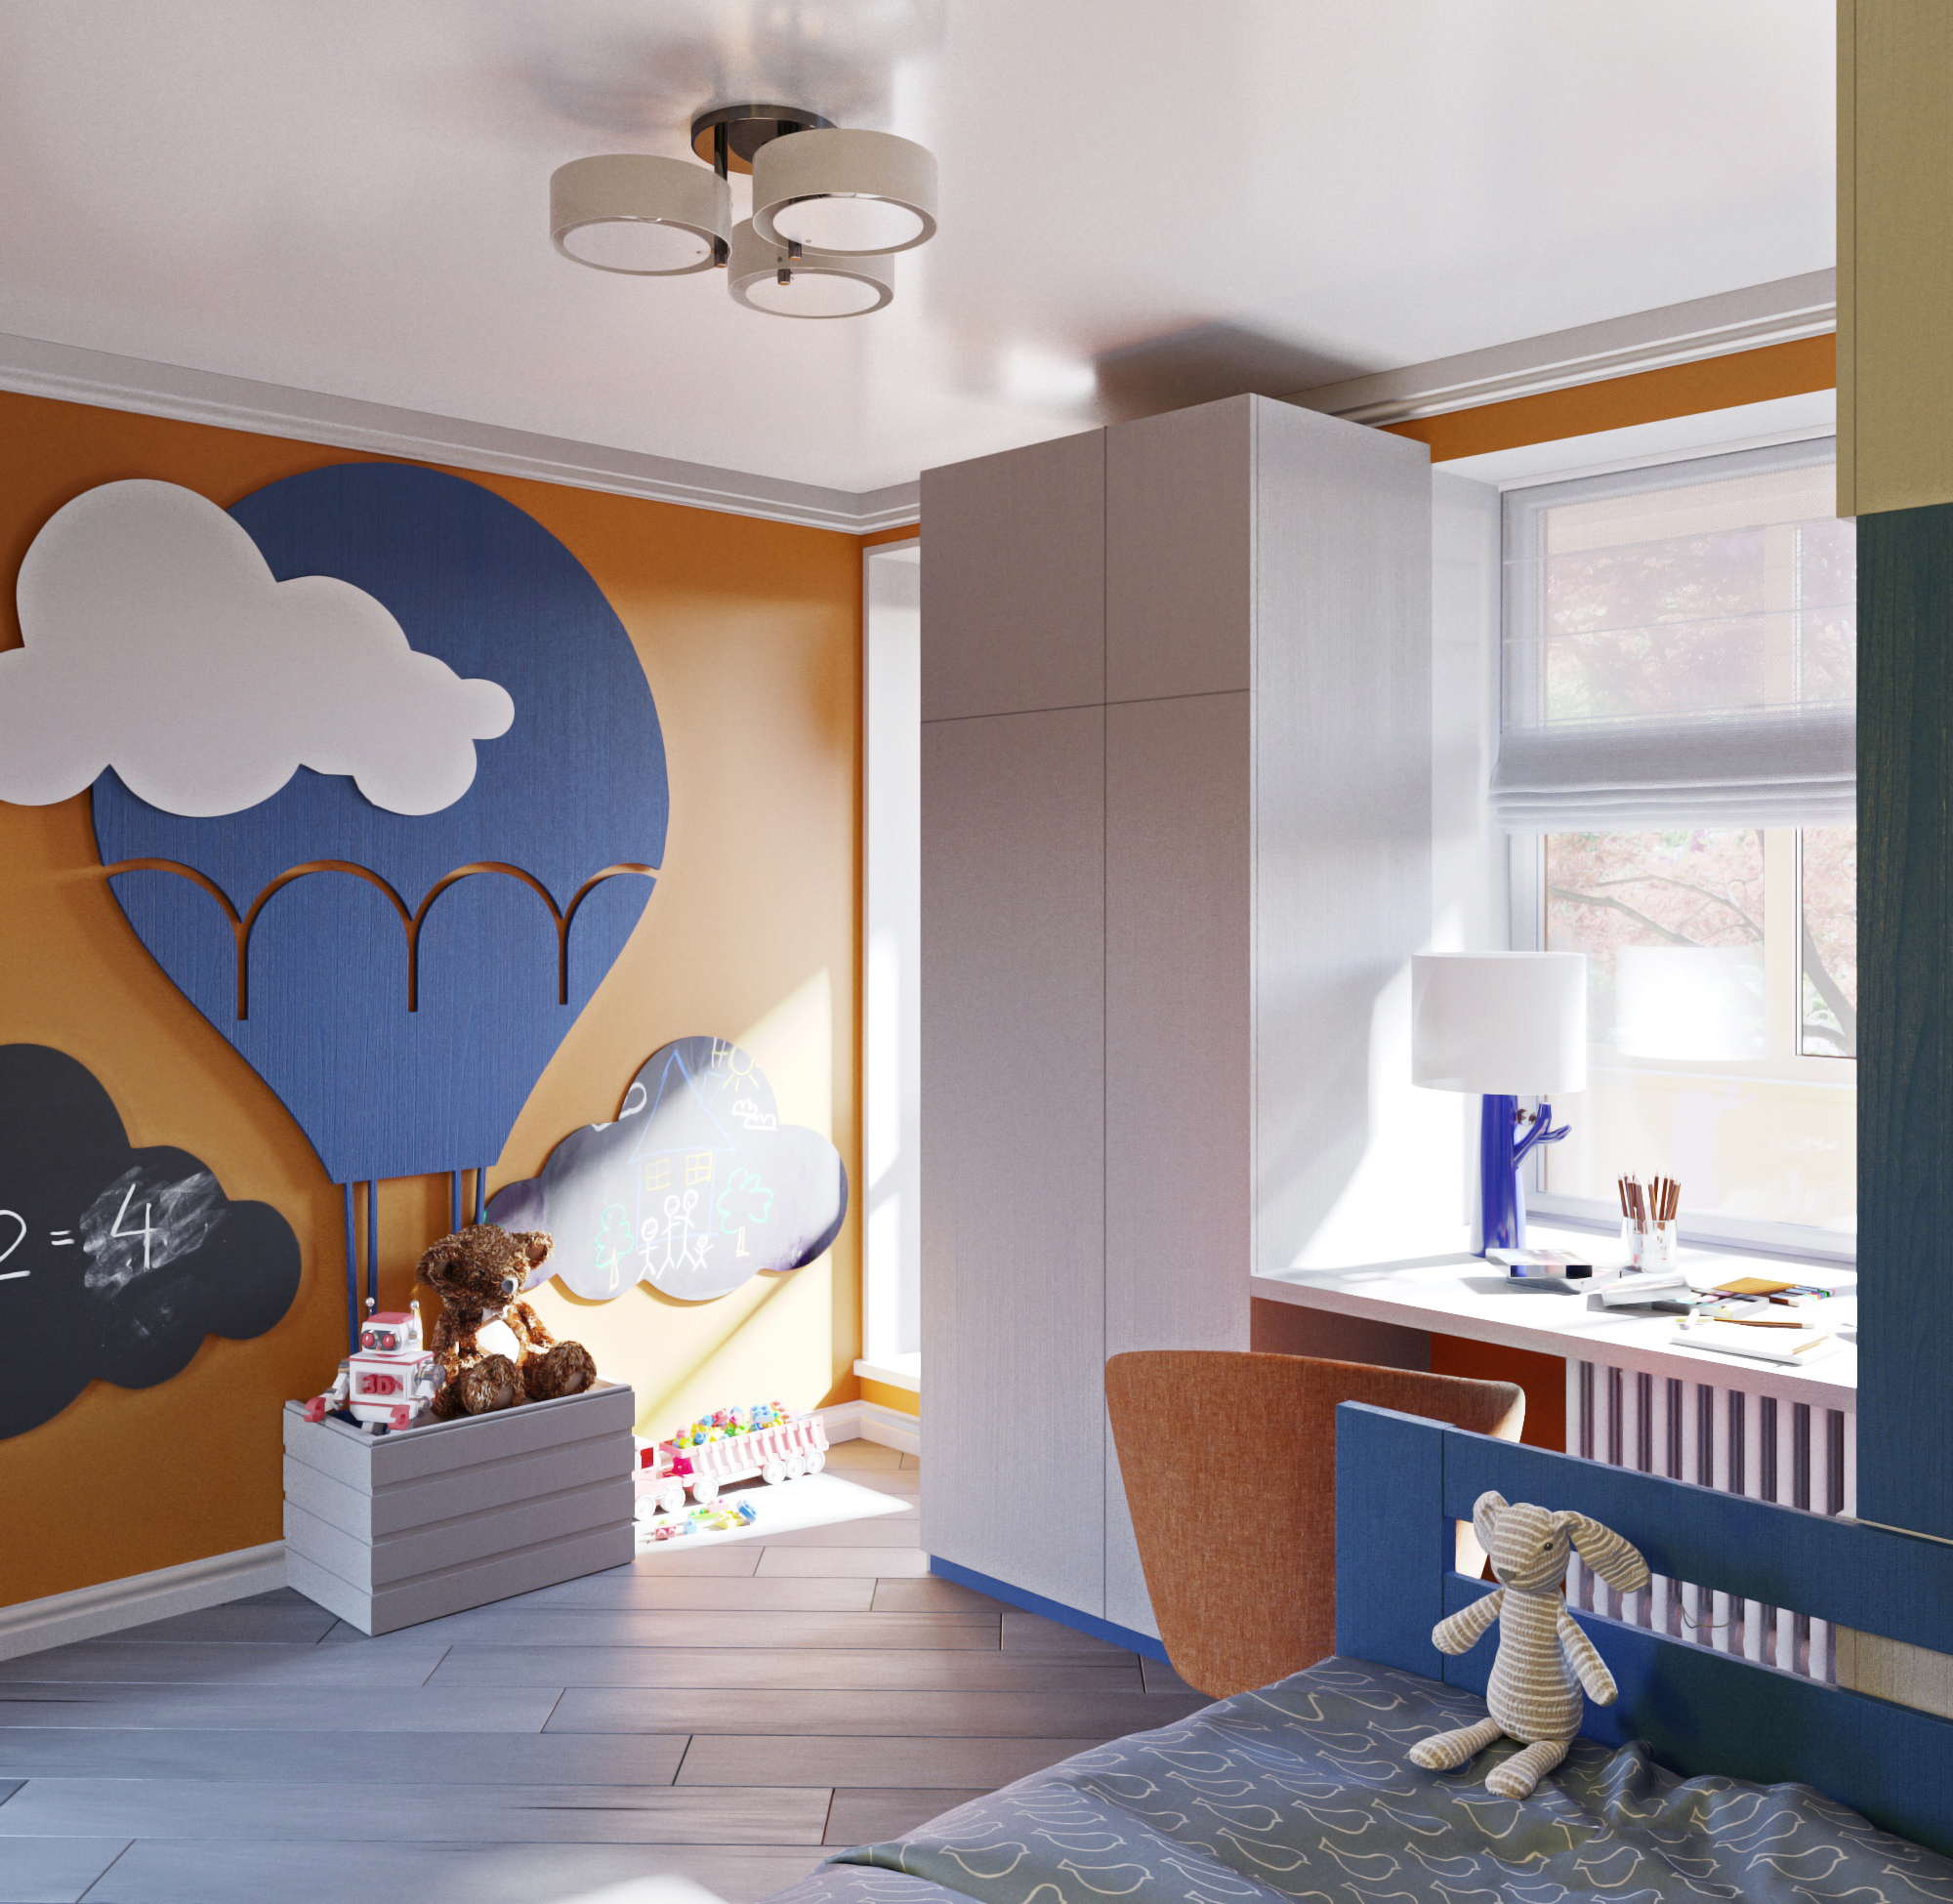 Chambre d’enfant pour un garçon dans 3d max corona render image